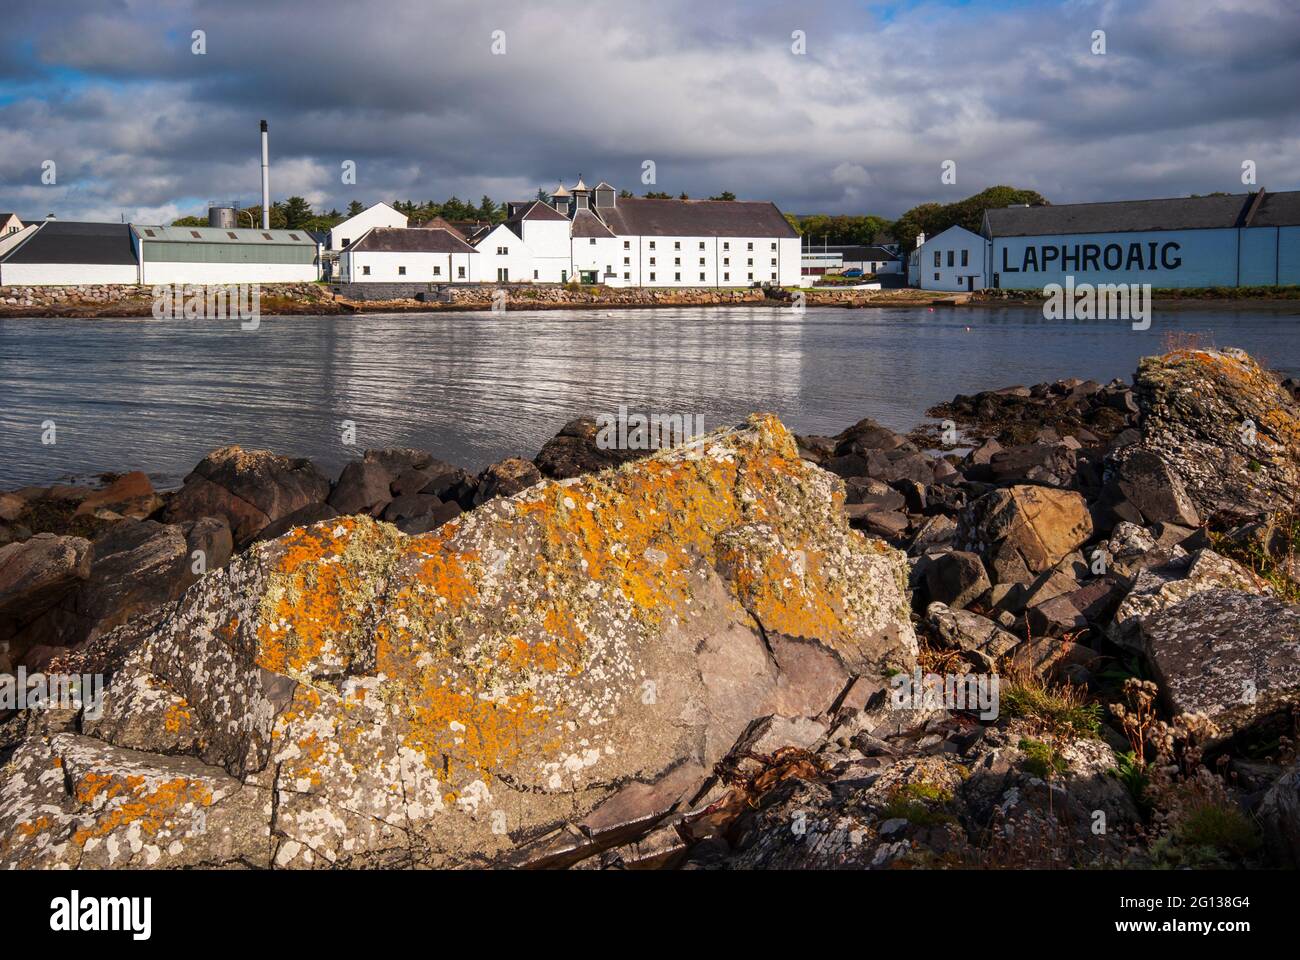 Ein Blick über die kleine Bucht zu den Gebäuden der Laphroaig Whisky-Brennerei auf der Isle of Islay in Schottland. Stockfoto